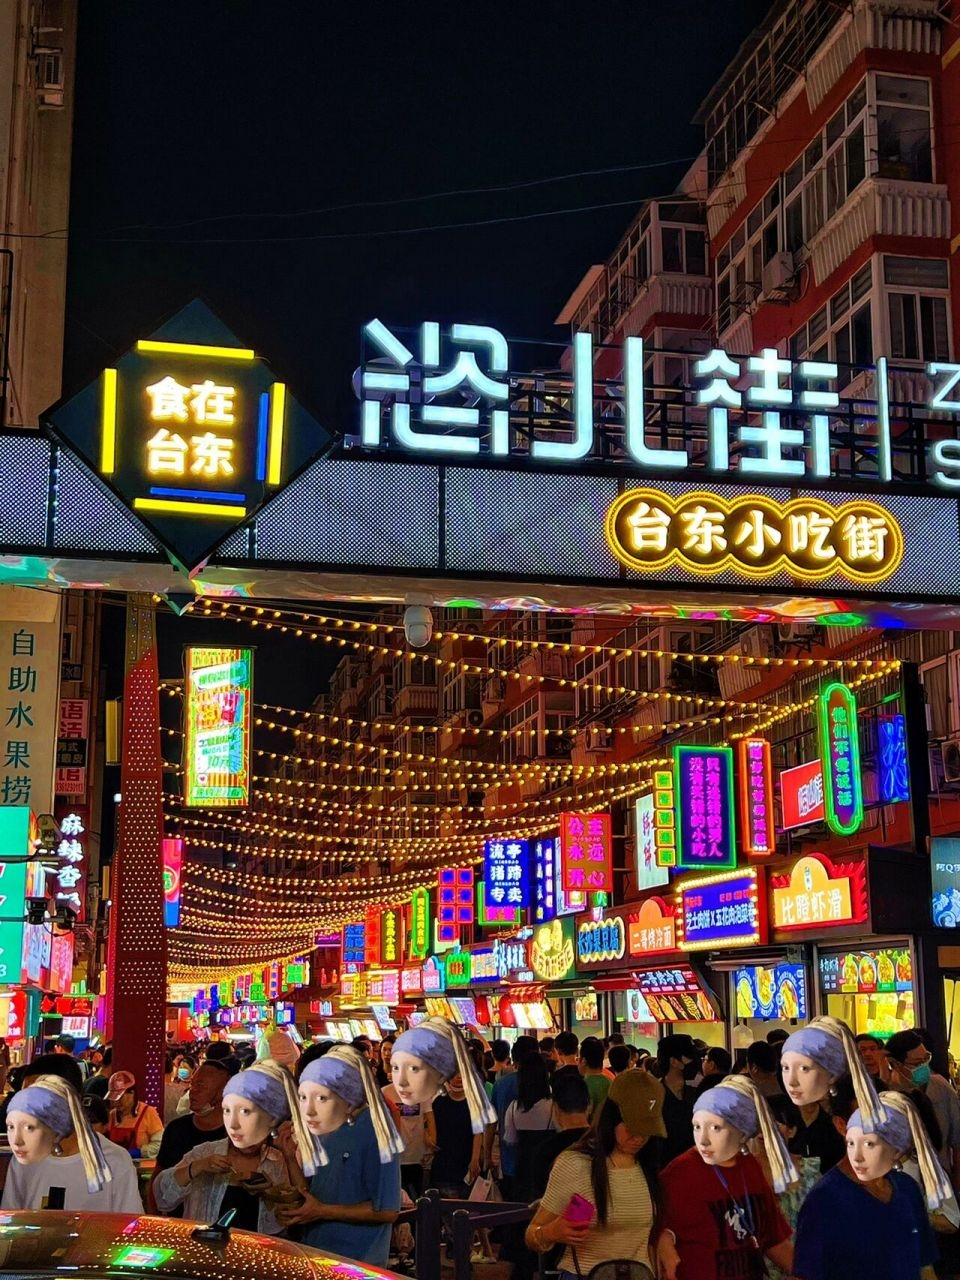 台北观光夜市是台北市的独特文化名片，吸引了无数游客。这些夜市集中展现了台湾的美食、文化和传统工艺。从